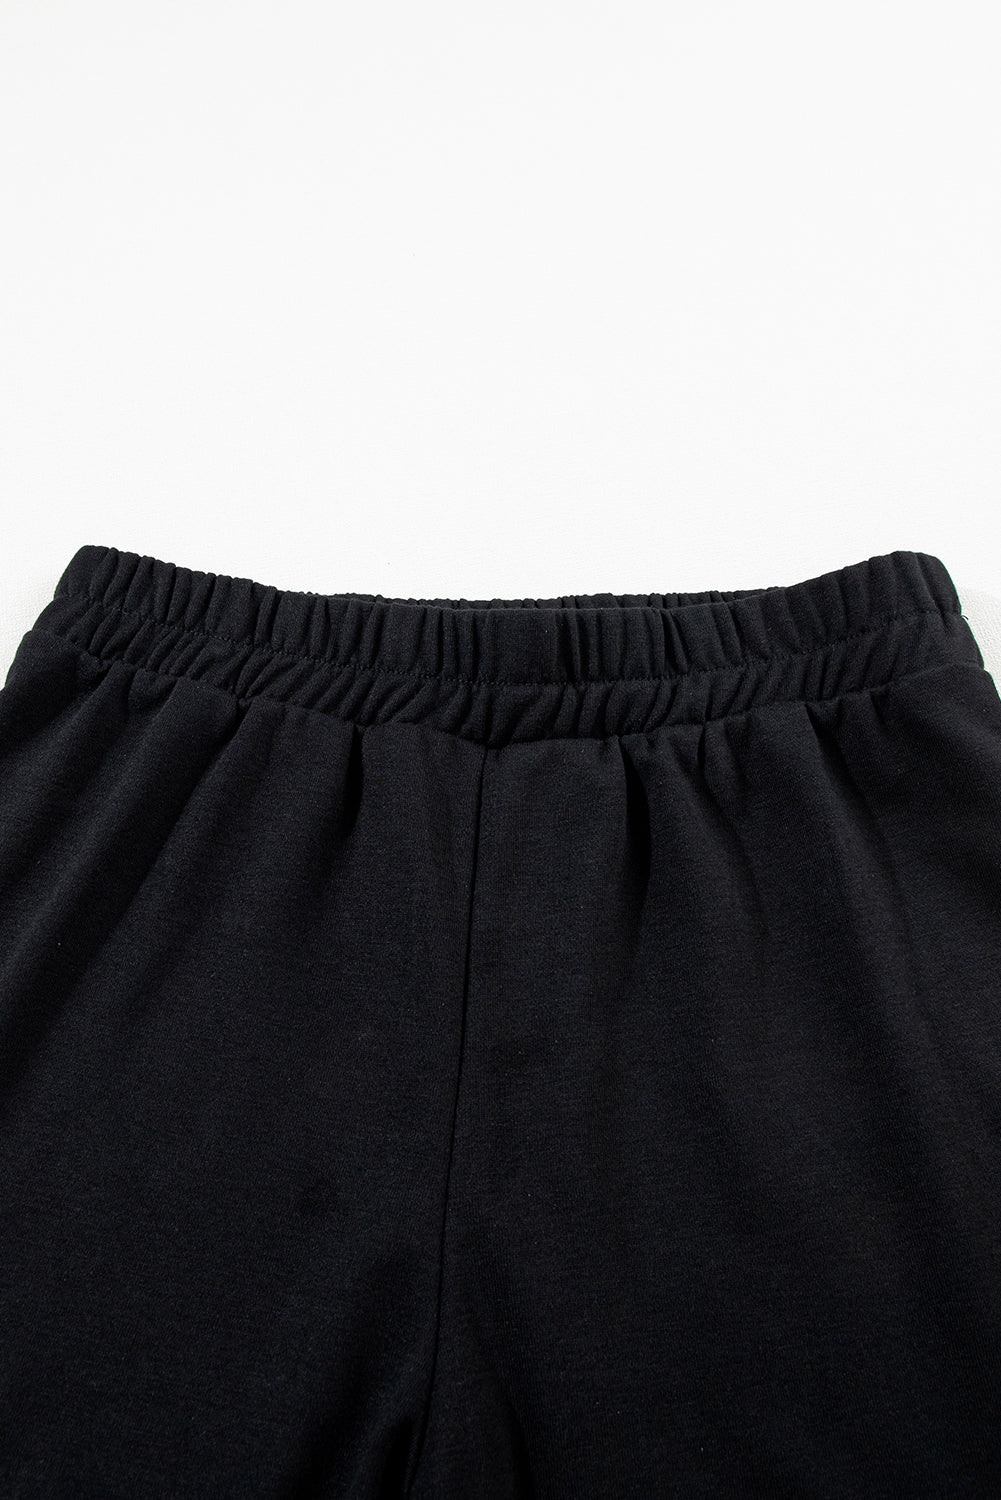 Schwarzes, einfarbiges, ärmelloses Set aus Kapuzenpullover und Shorts